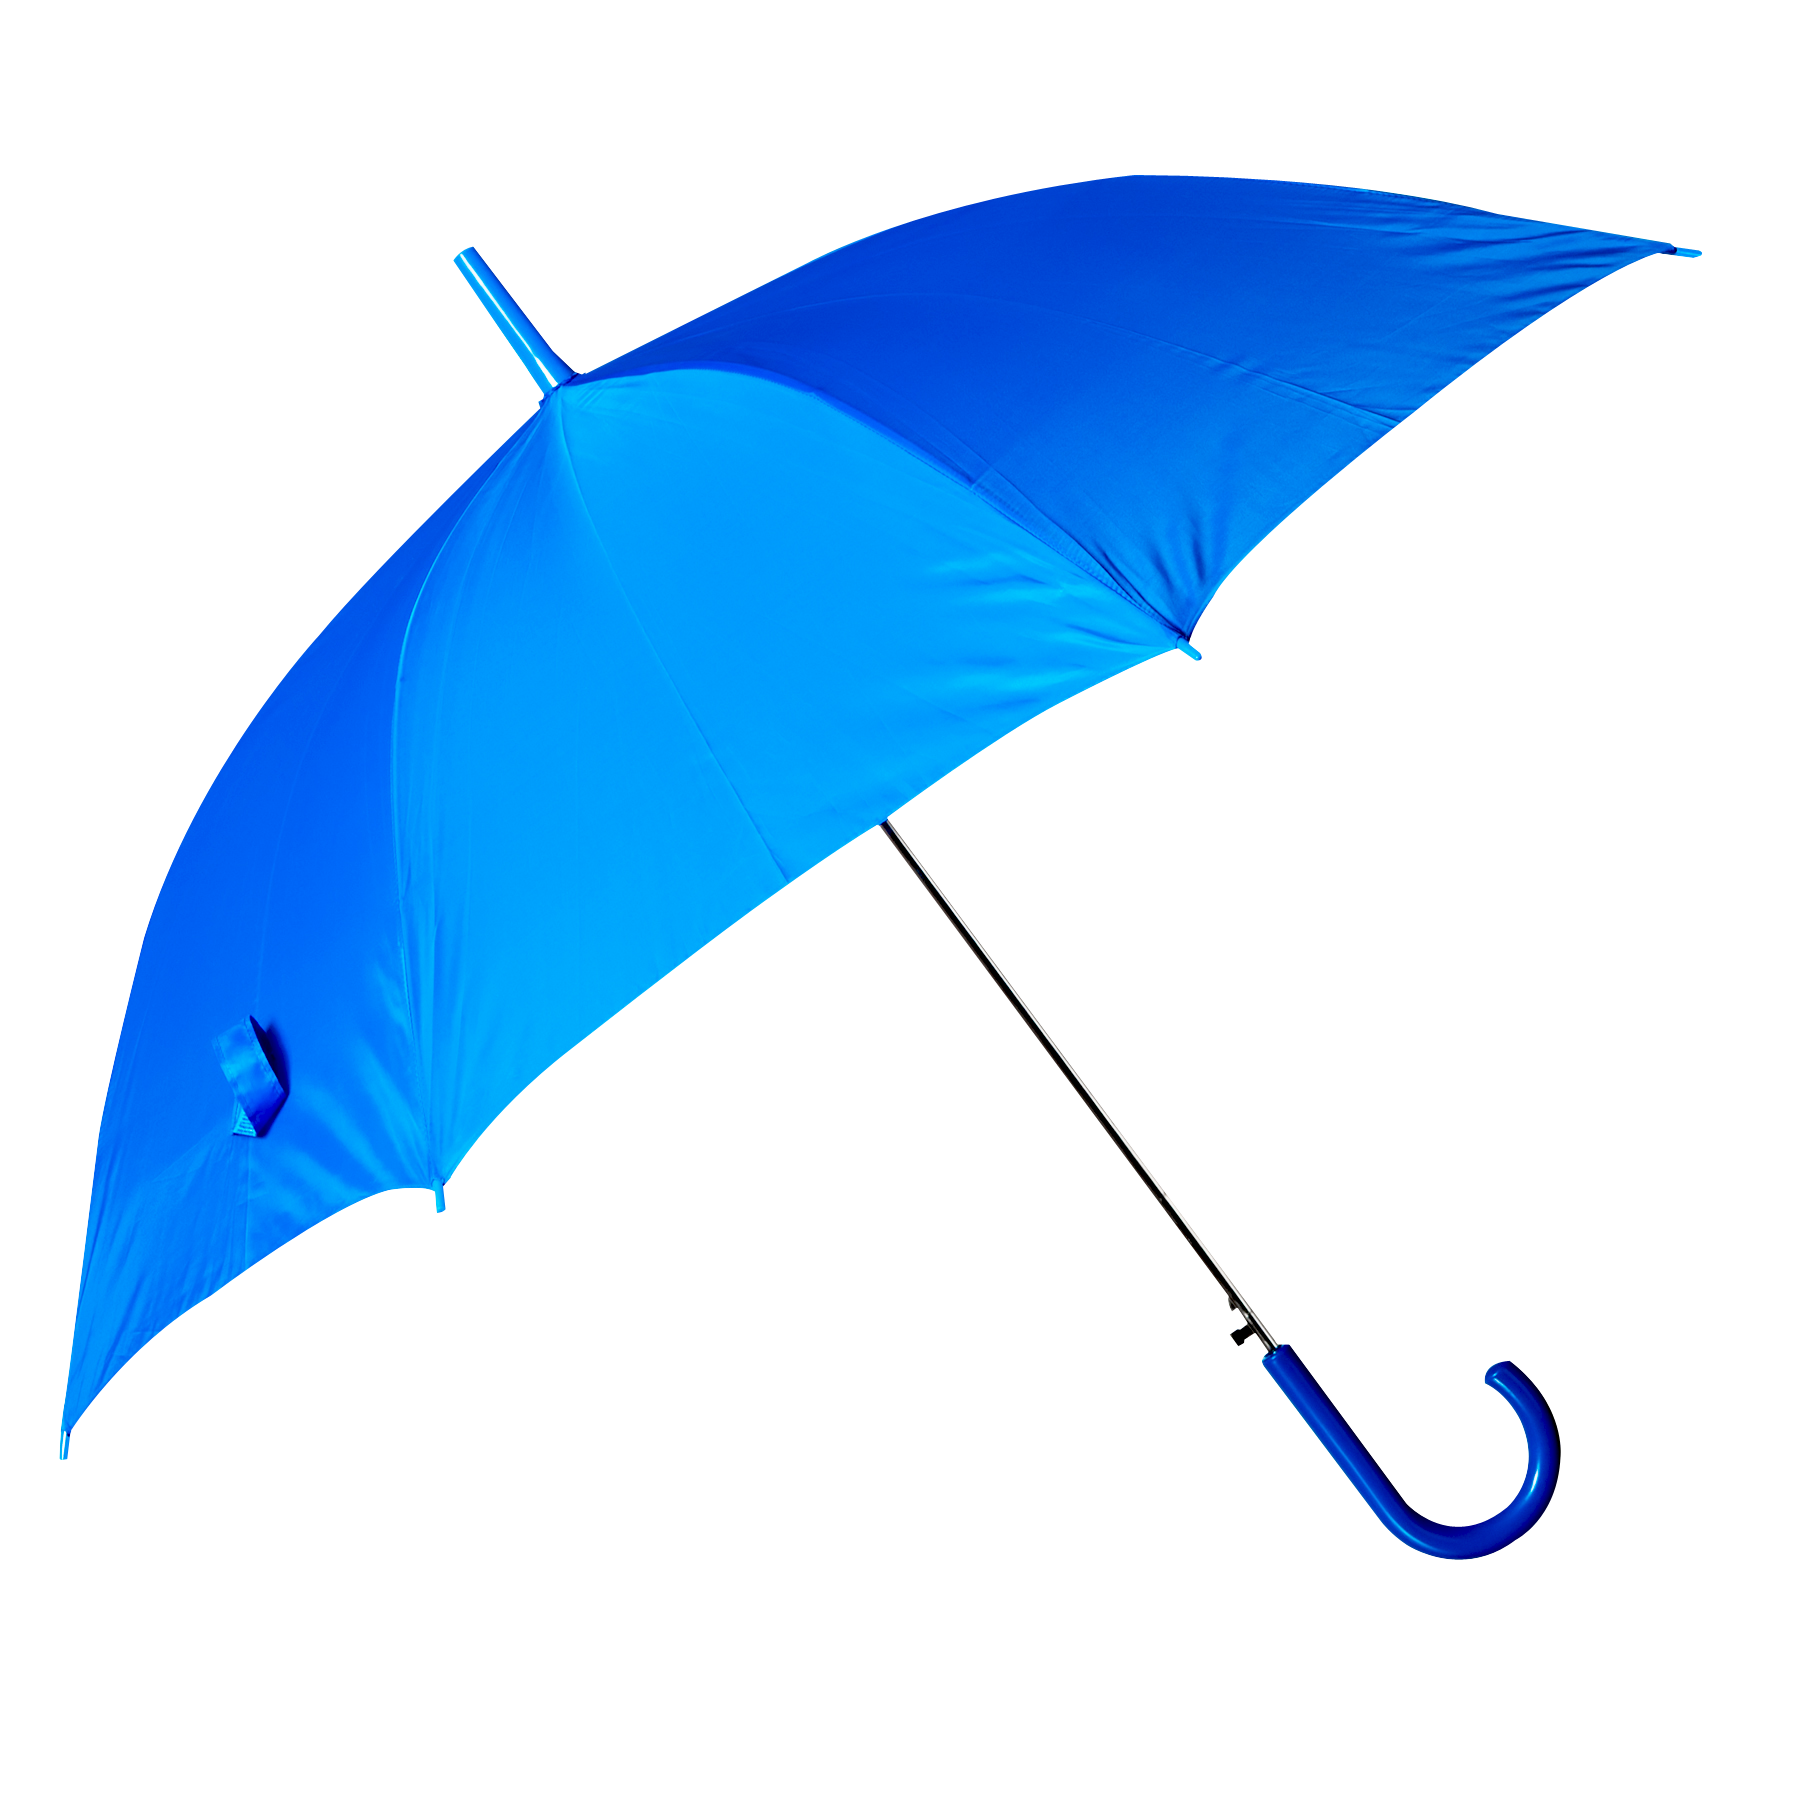 Blue Umbrella Png - Umbrella, Transparent background PNG HD thumbnail